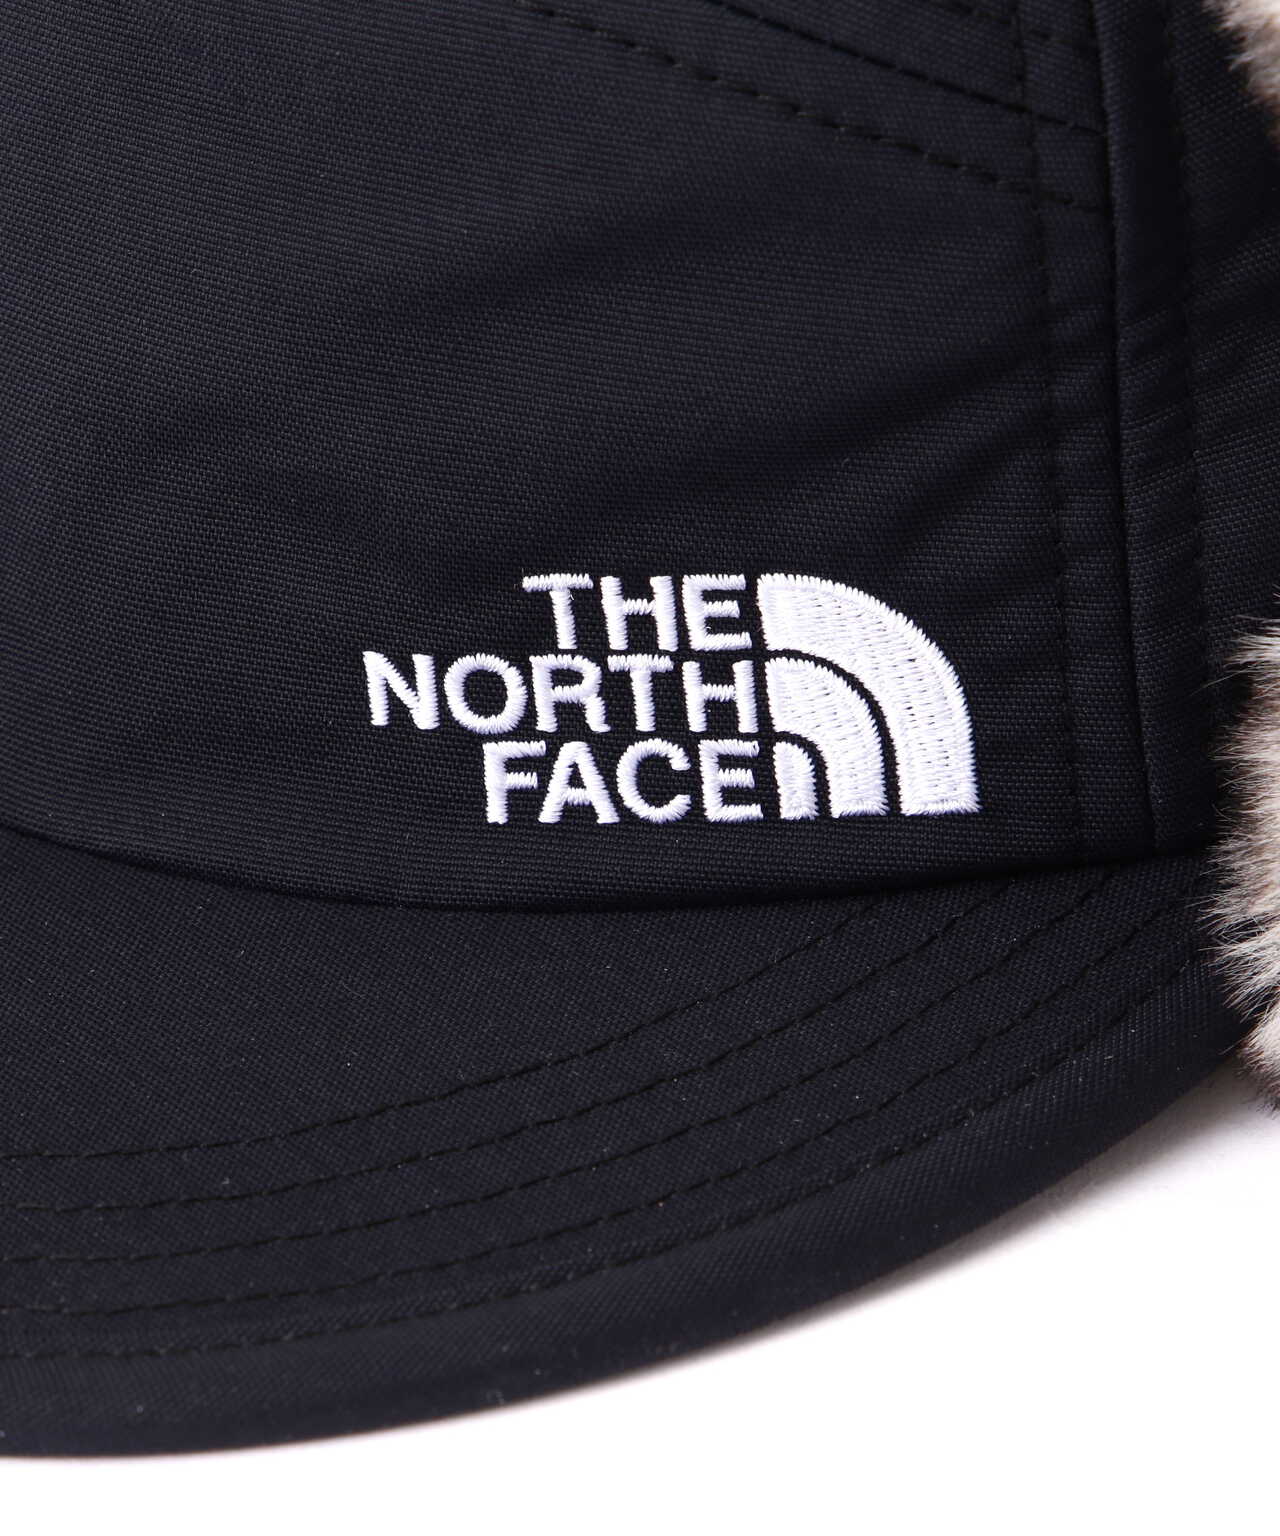 THE NORTH FACE/ザ・ノースフェイス/Badland Cap/バッドランドキャップ 